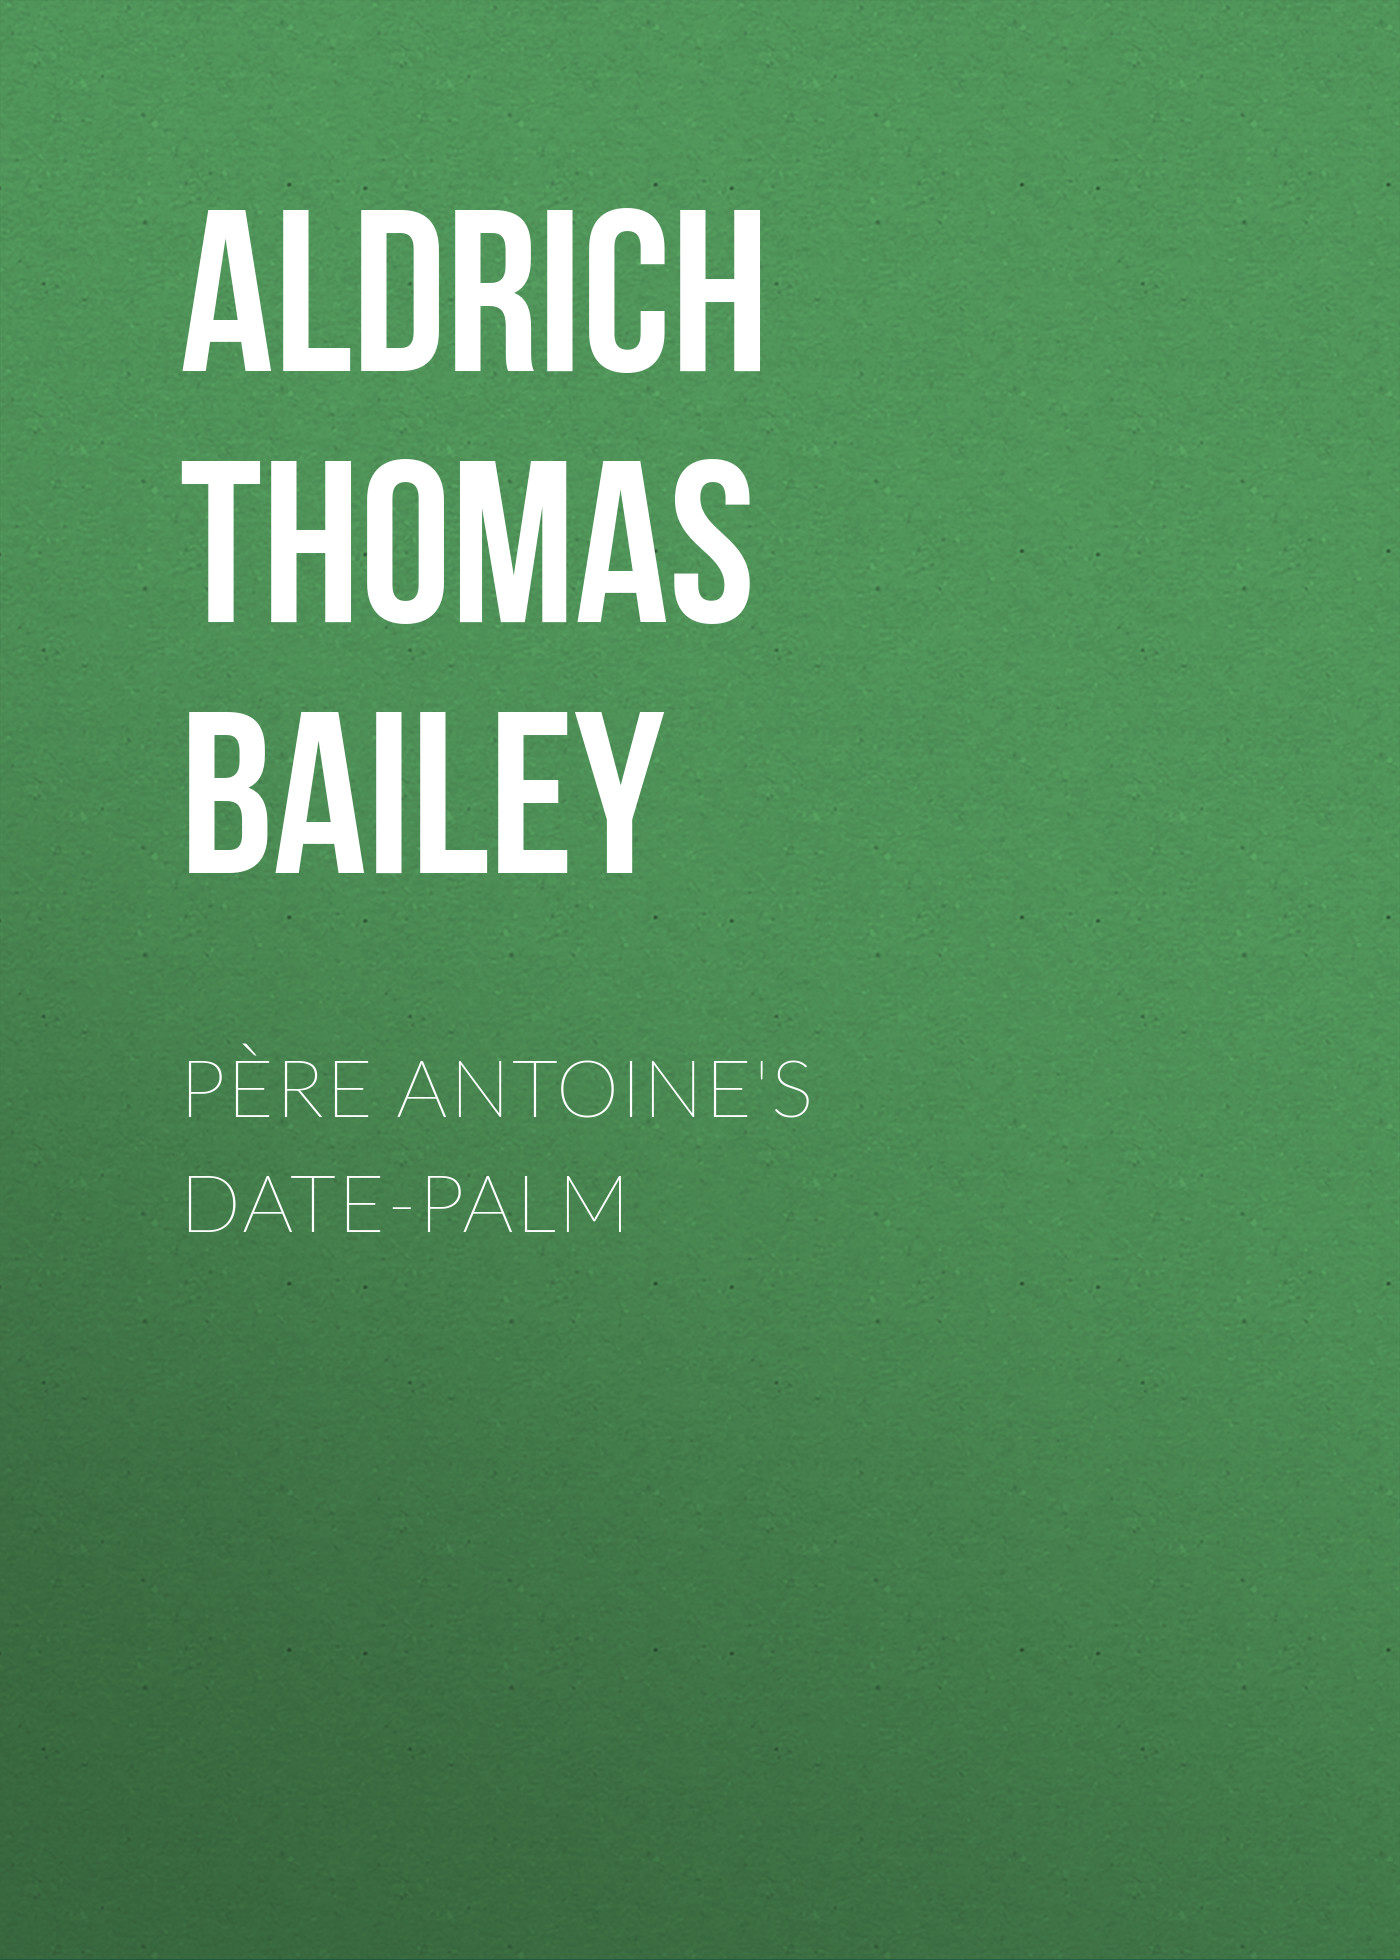 Книга Père Antoine's Date-Palm из серии , созданная Thomas Aldrich, может относится к жанру Зарубежная классика, Литература 19 века, Зарубежная старинная литература. Стоимость электронной книги Père Antoine's Date-Palm с идентификатором 36367502 составляет 0 руб.